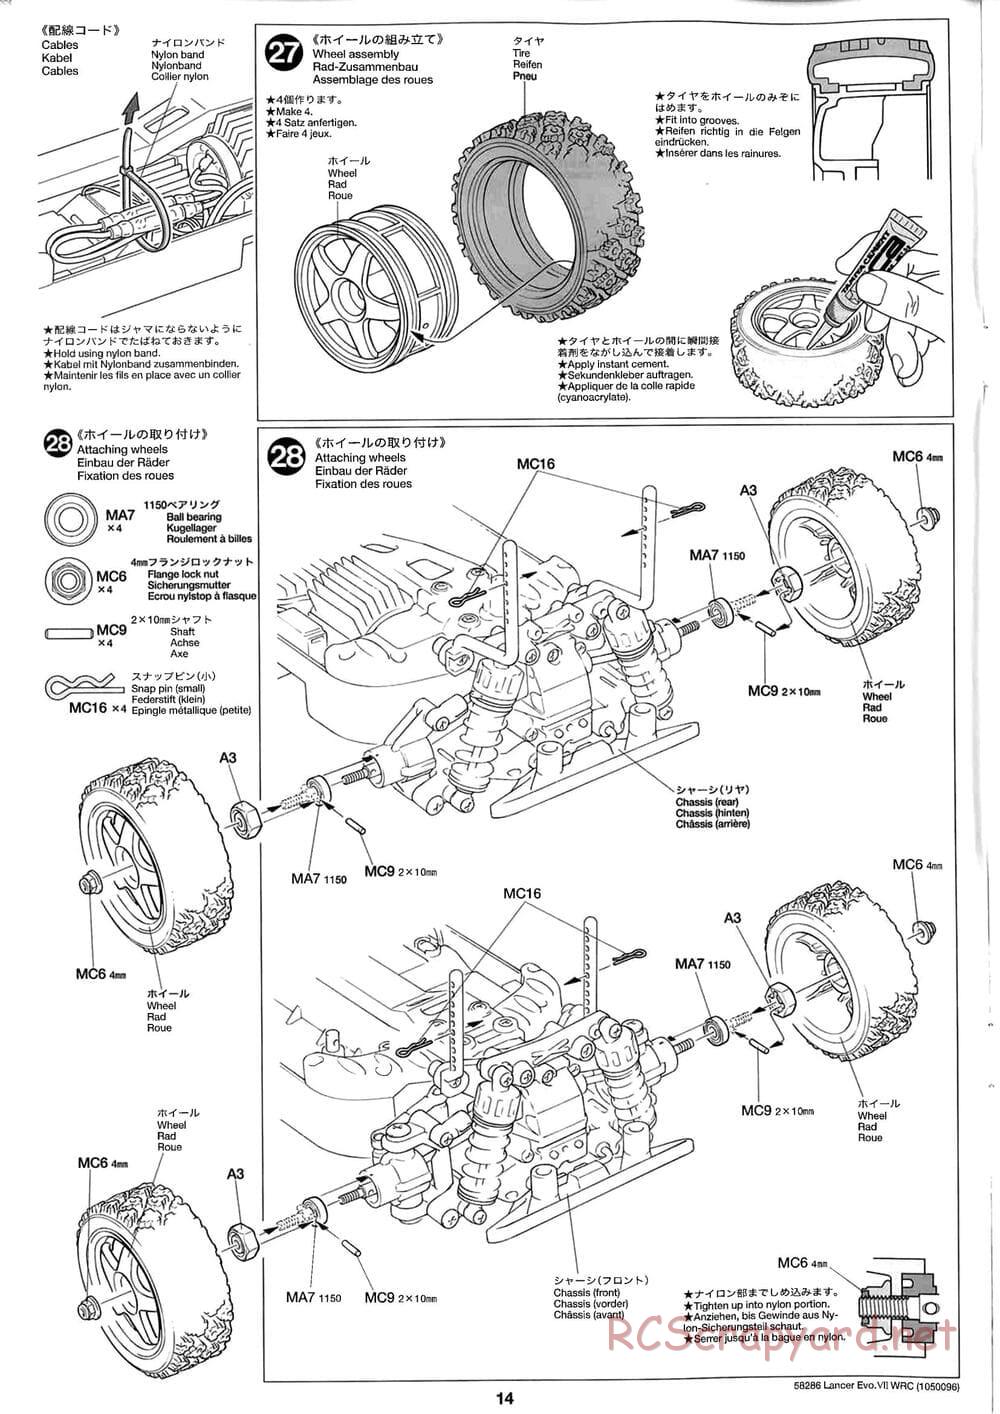 Tamiya - Mitsubishi Lancer Evolution VII WRC - TB-01 Chassis - Manual - Page 14